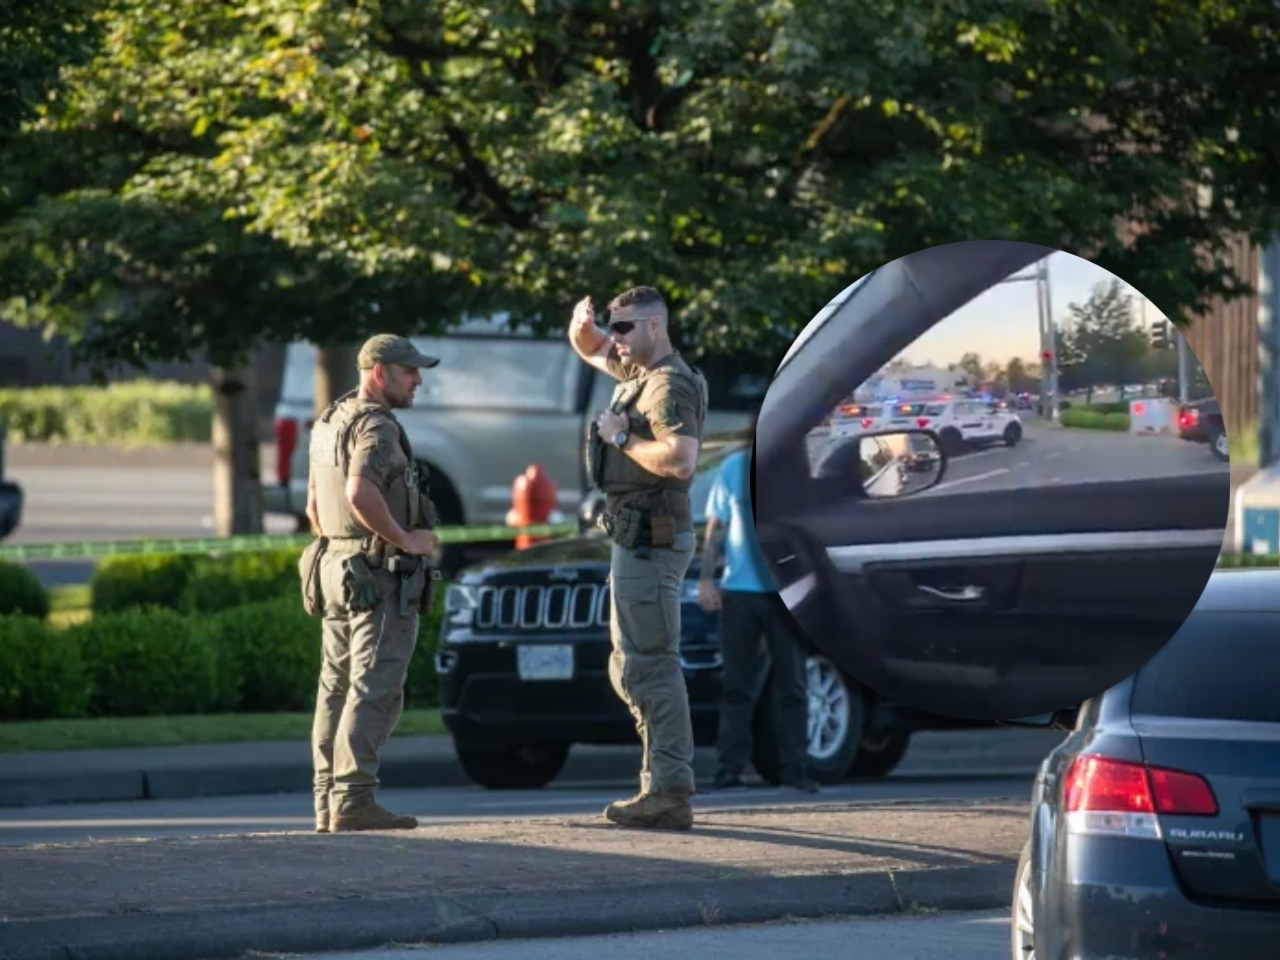 La Policía de Canadá indicó que hay varios heridos tras el ataque armado ocurrido en Langley, sin dar una cifra aproximada de los mismos